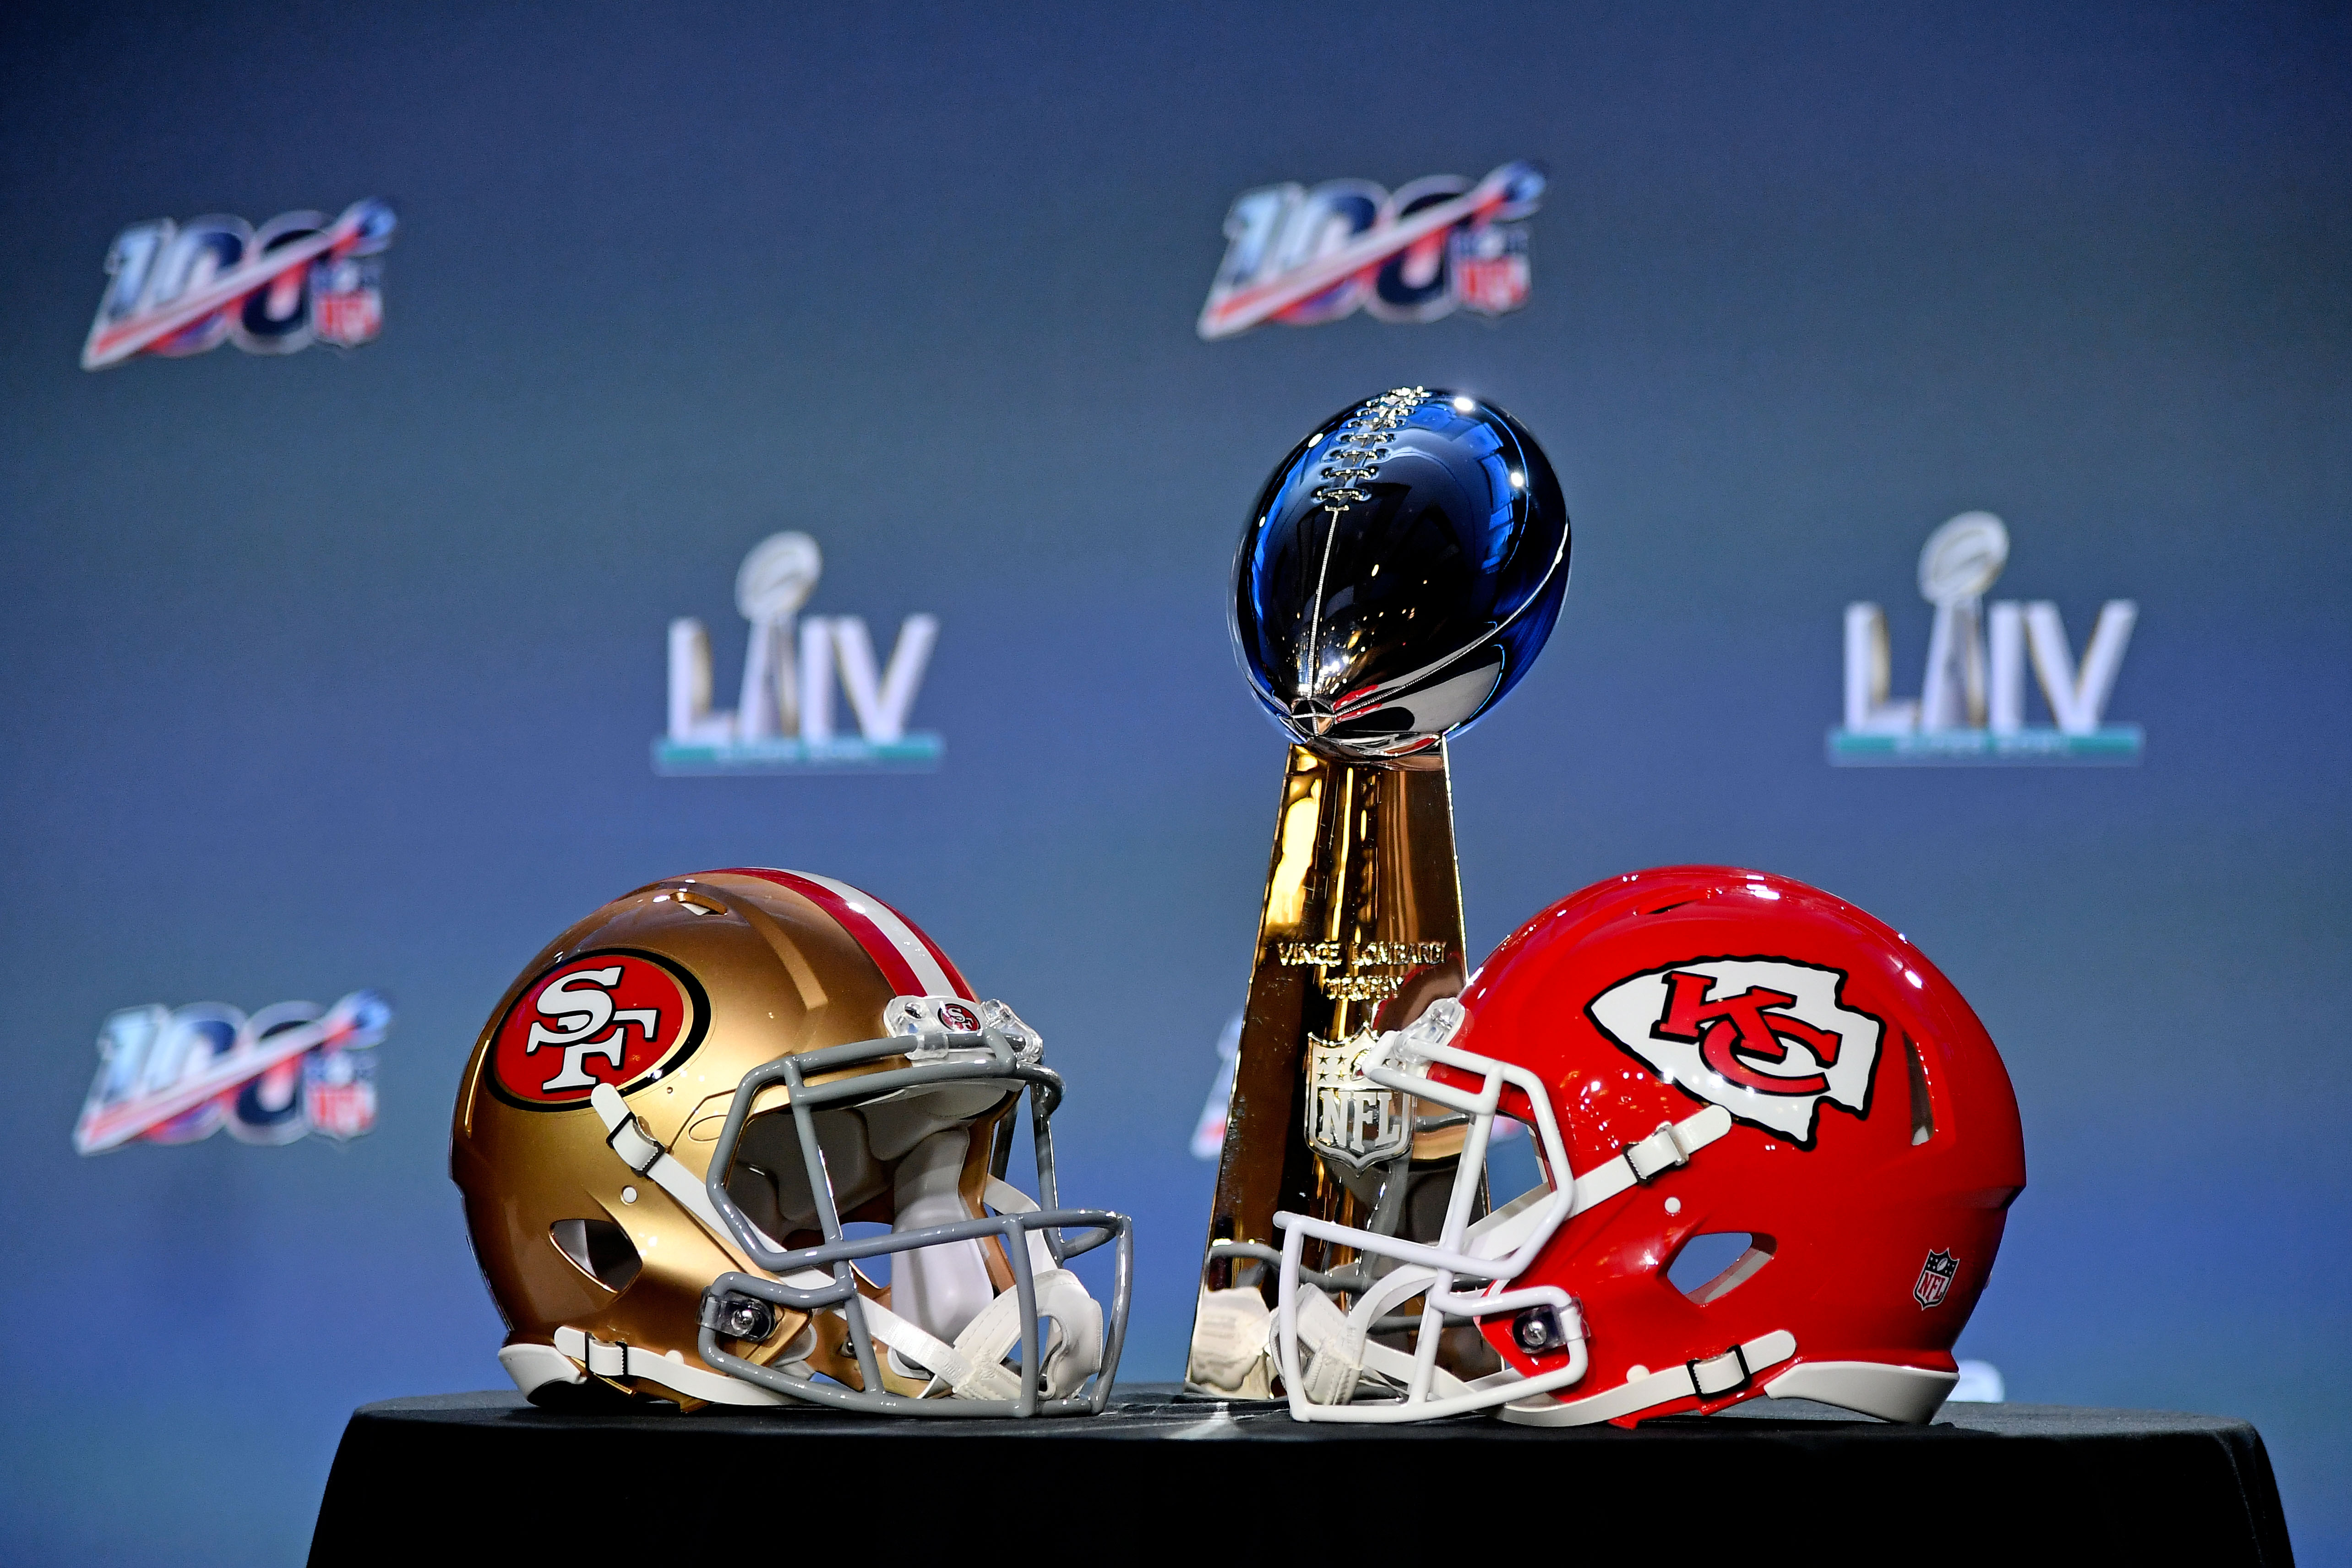 NFL: Super Bowl LIV-Commissioner Roger Goodell Press Conference